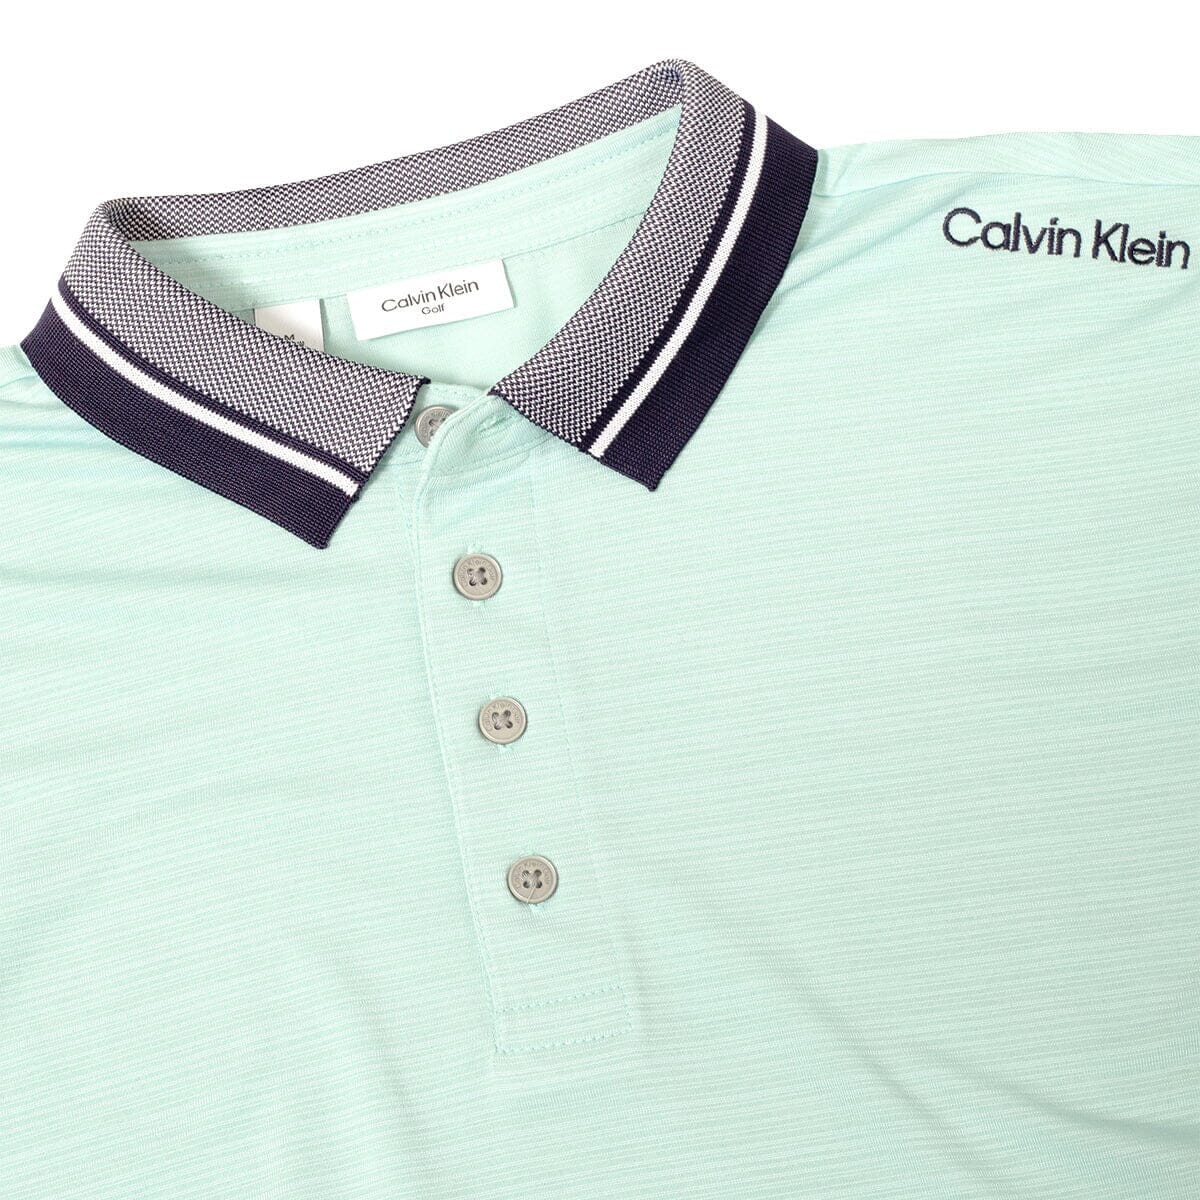 Polo Calvin Klein Parramore Golf CK POLOS PARA HOMBRE Calvin Klein